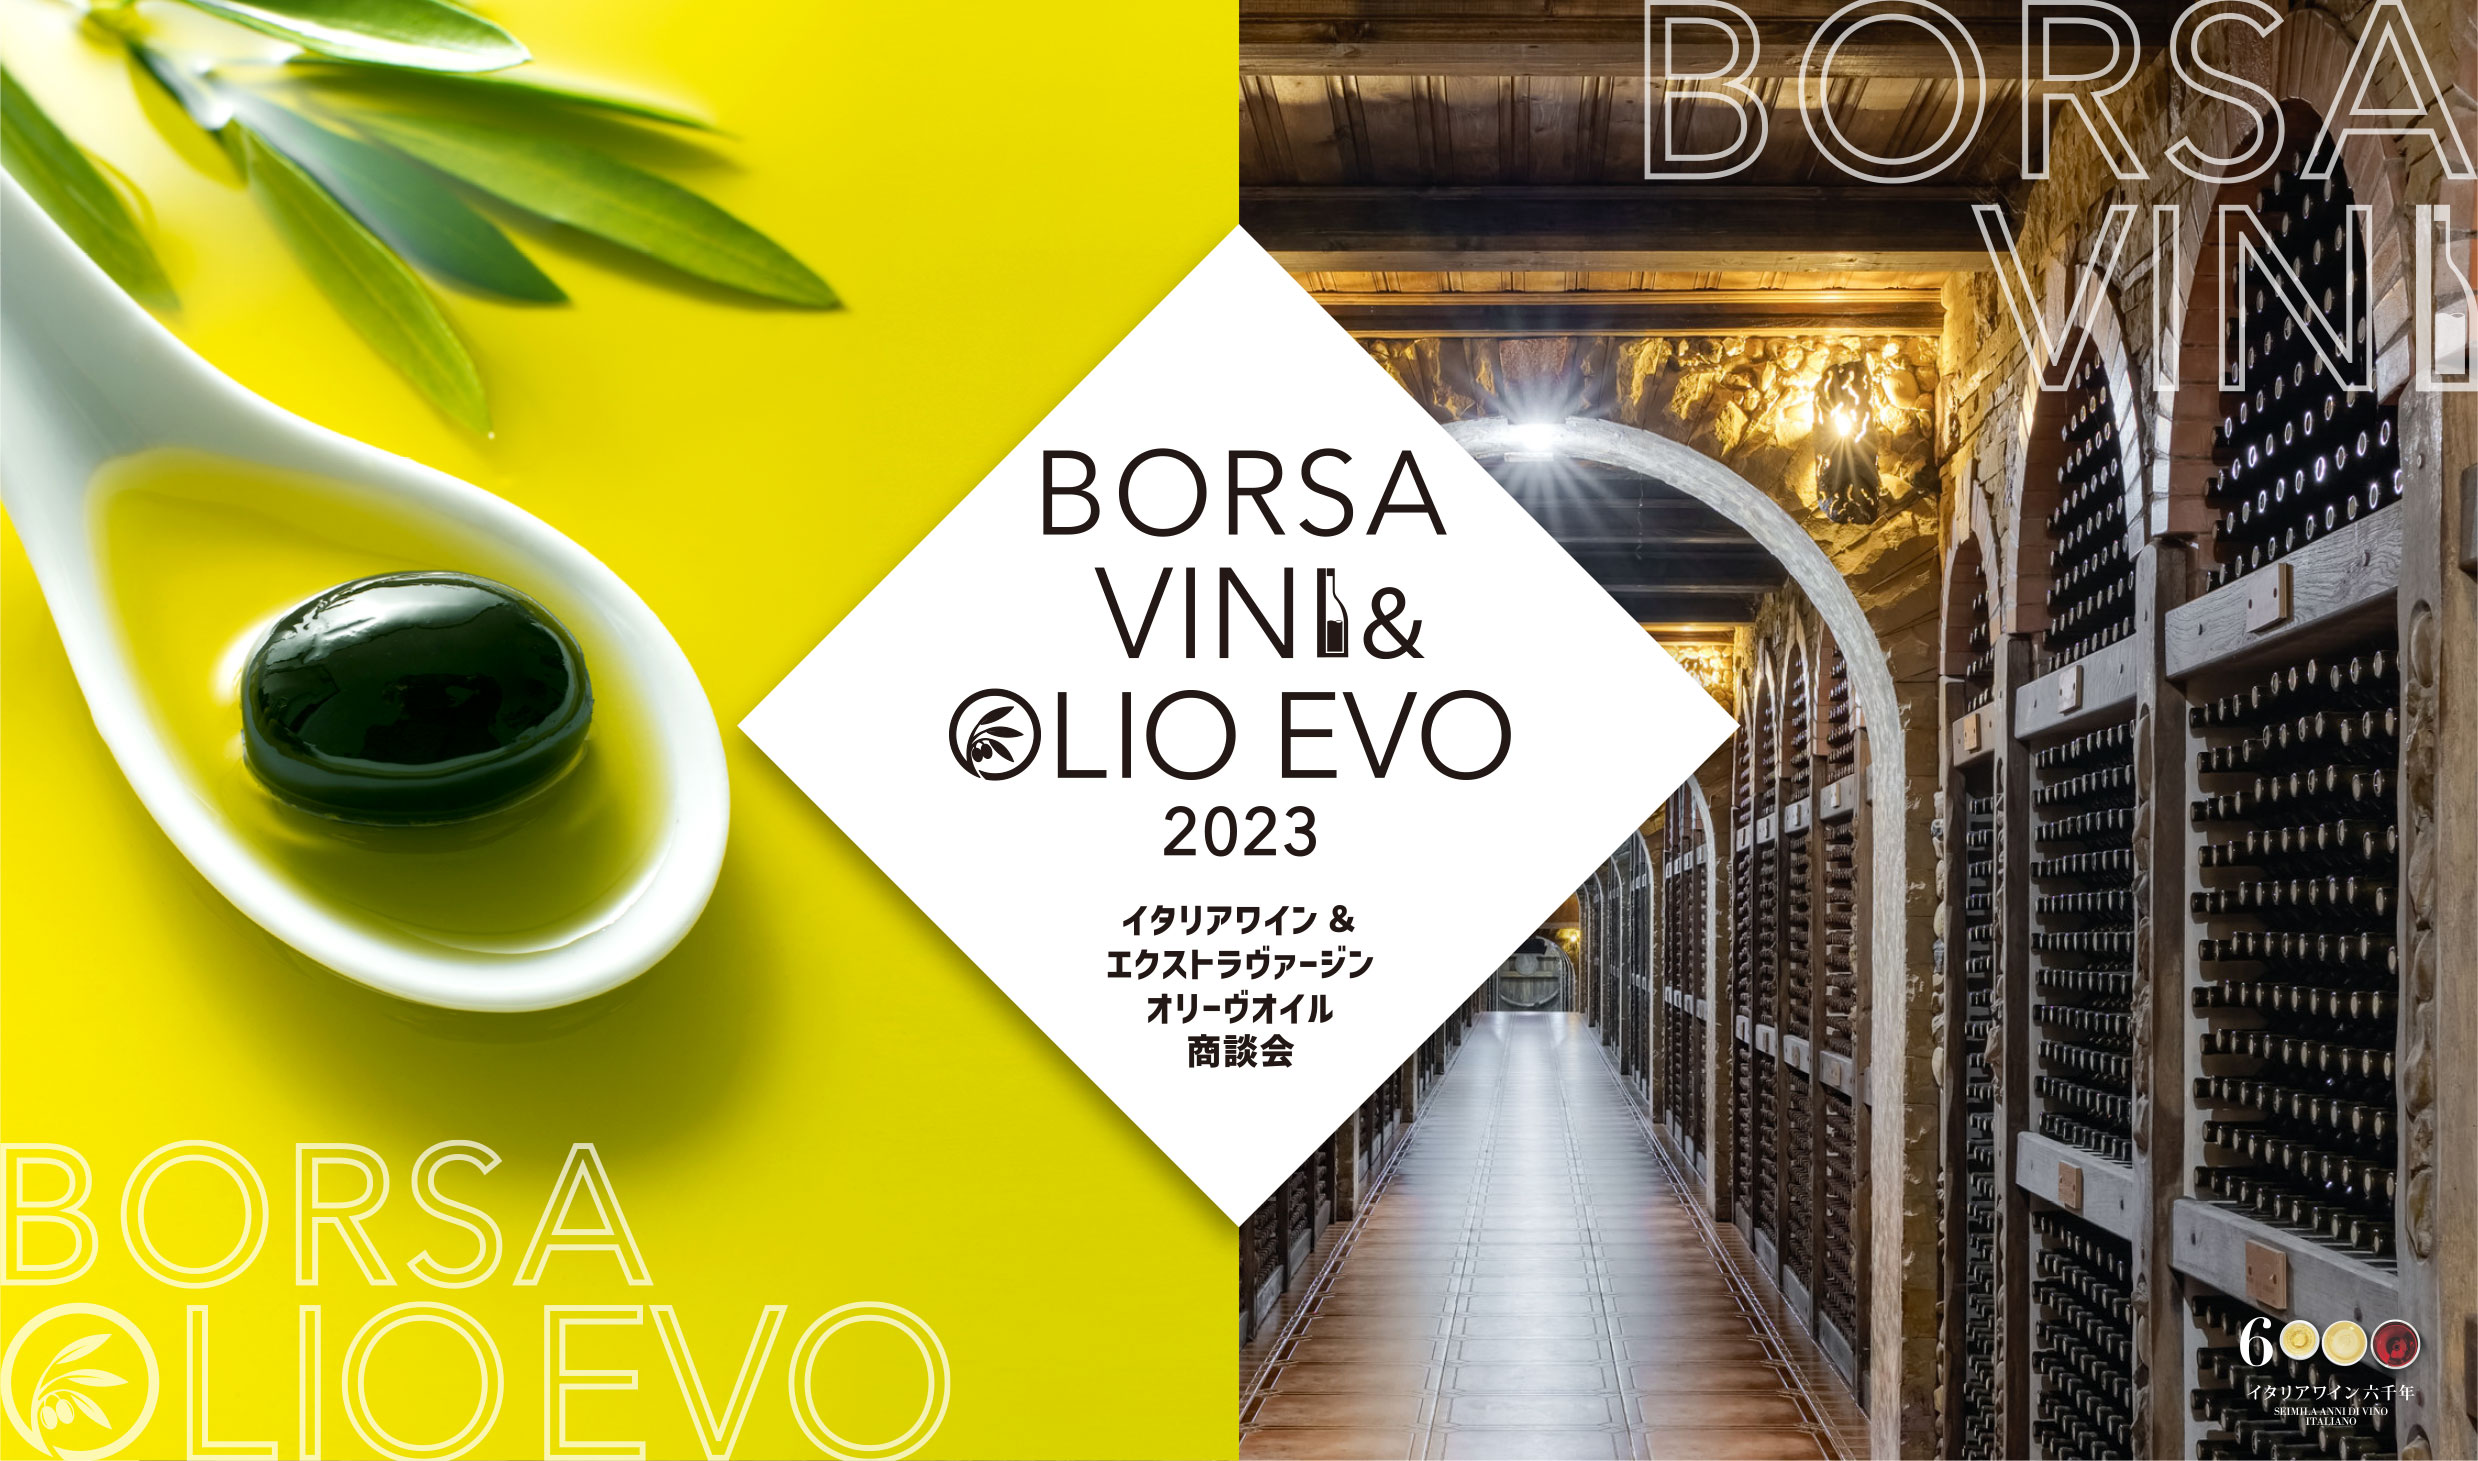 イタリアワイン&エクストラヴァージンオリーヴオイル商談会商談会 BORSA VINI&OLIO EVO 2023